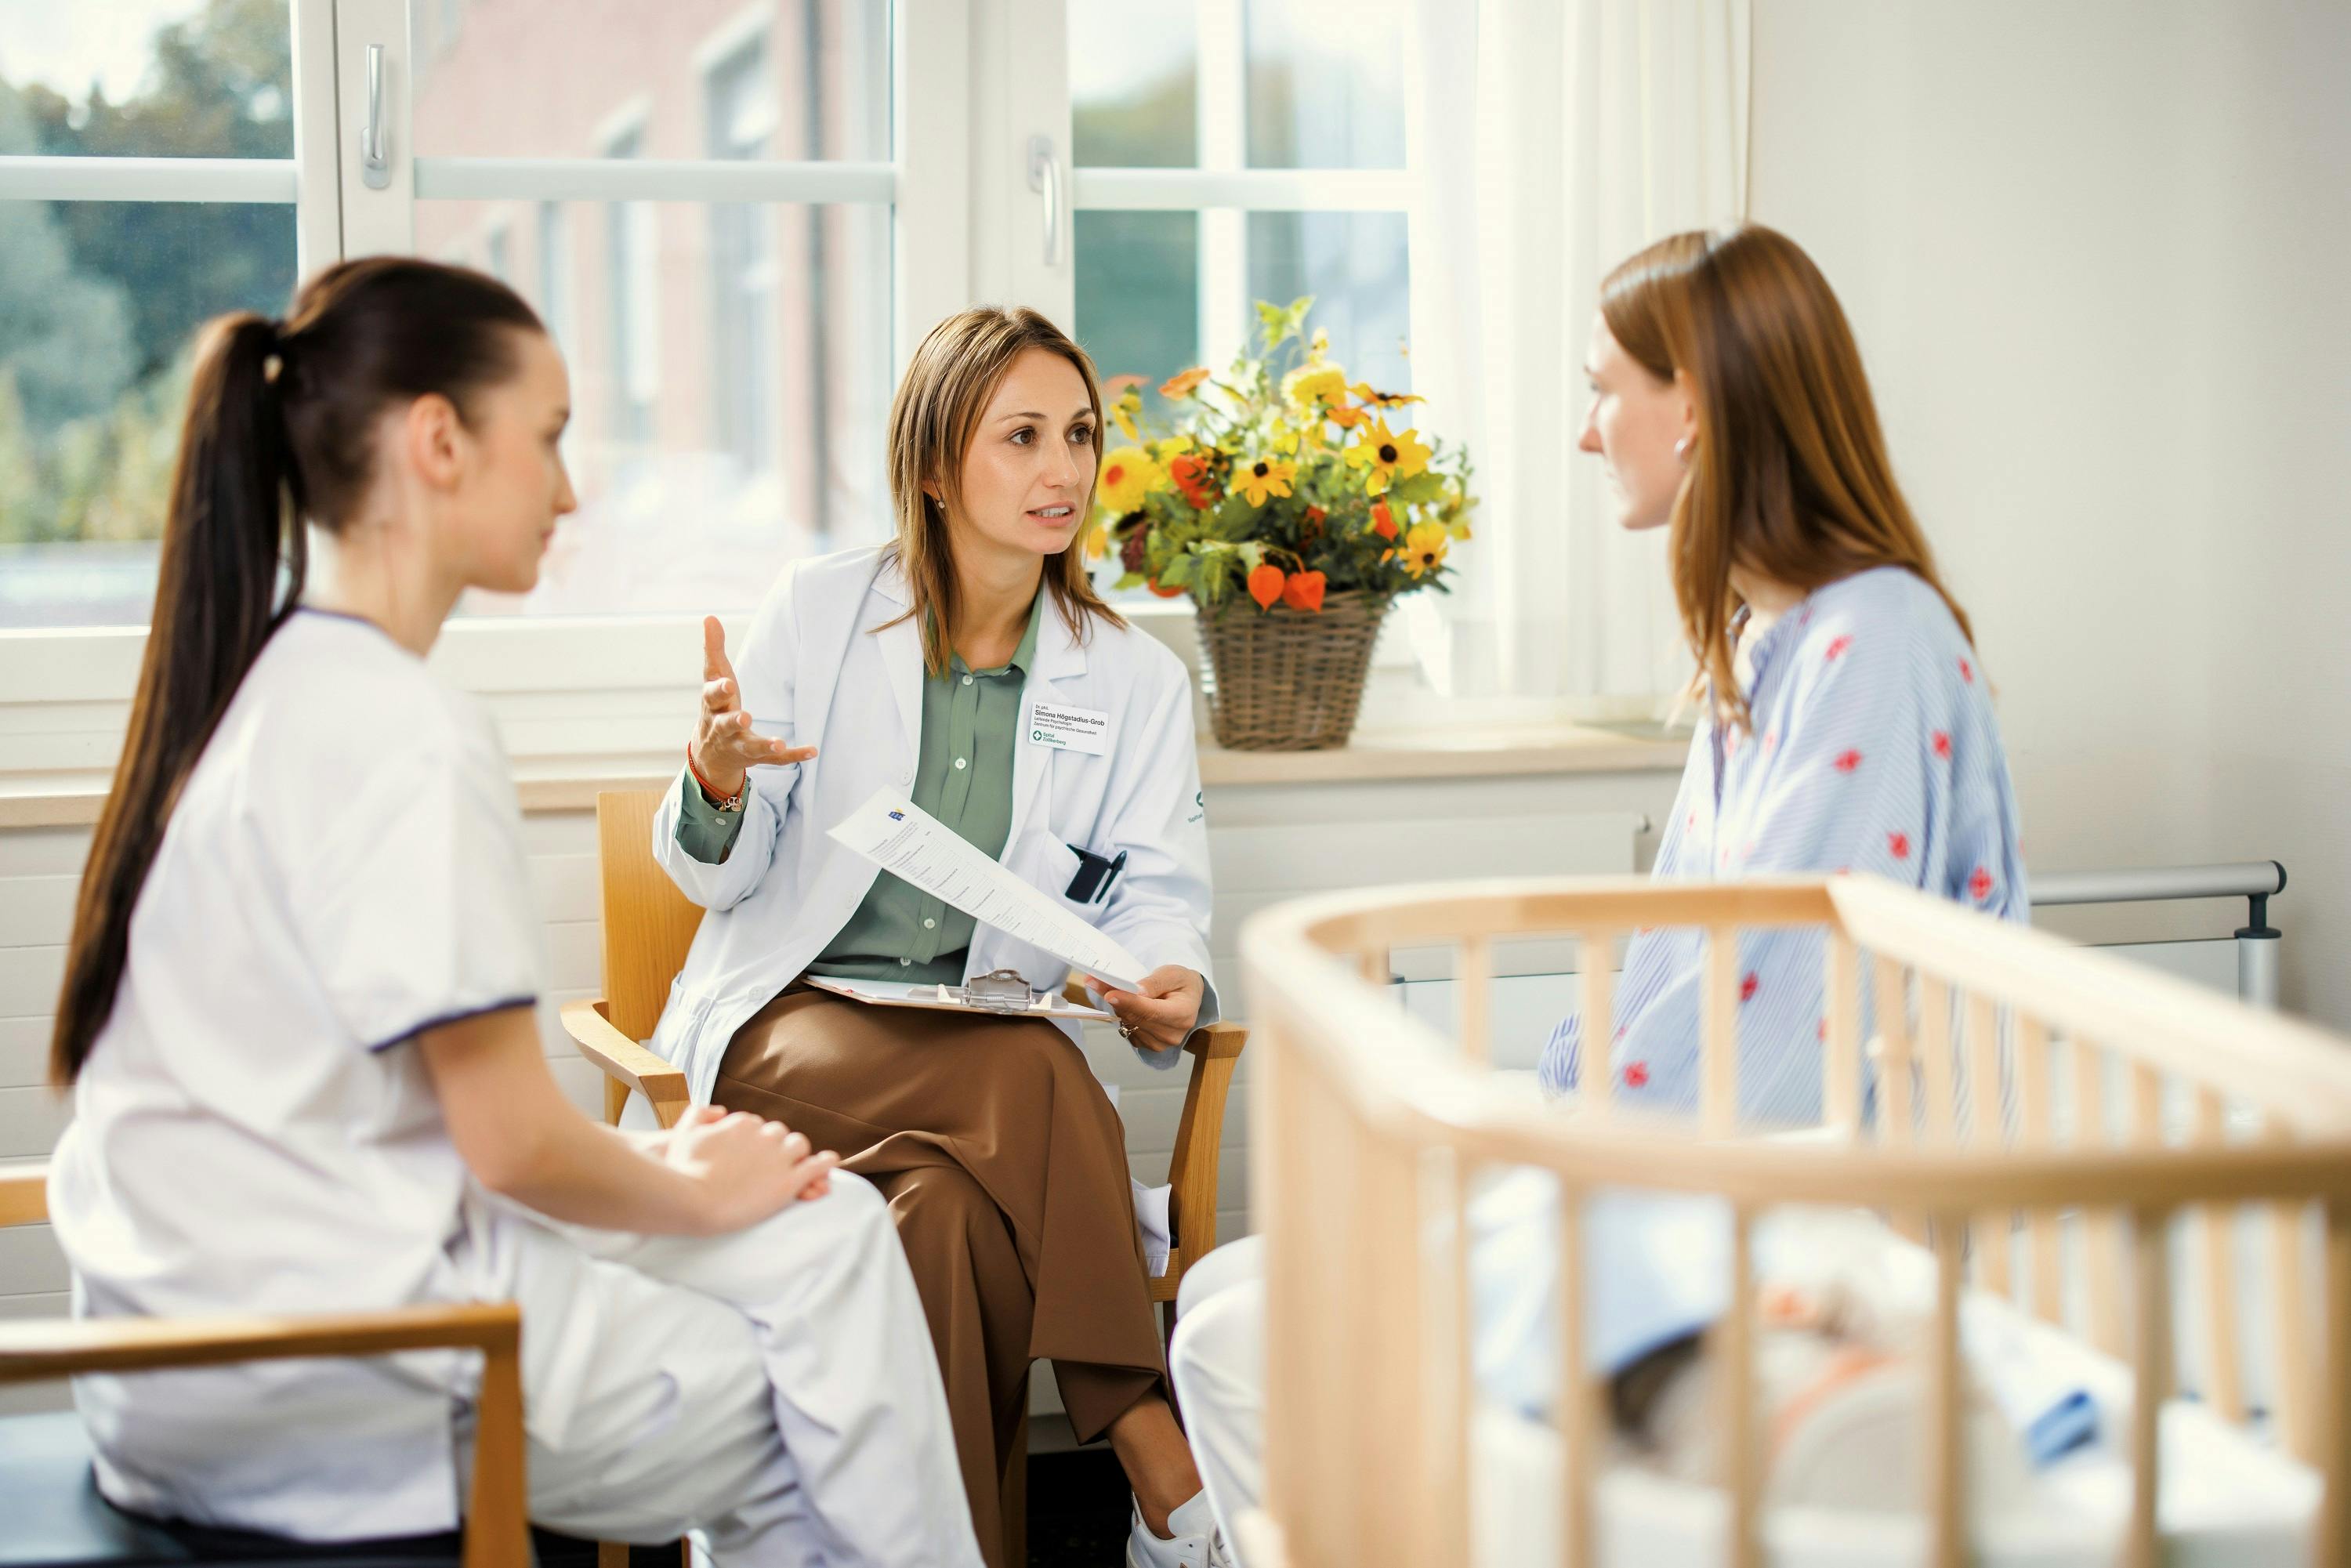 Ärztin im Gespräch mit Patientin und Krankenpflegerin in einem Krankenhauszimmer.